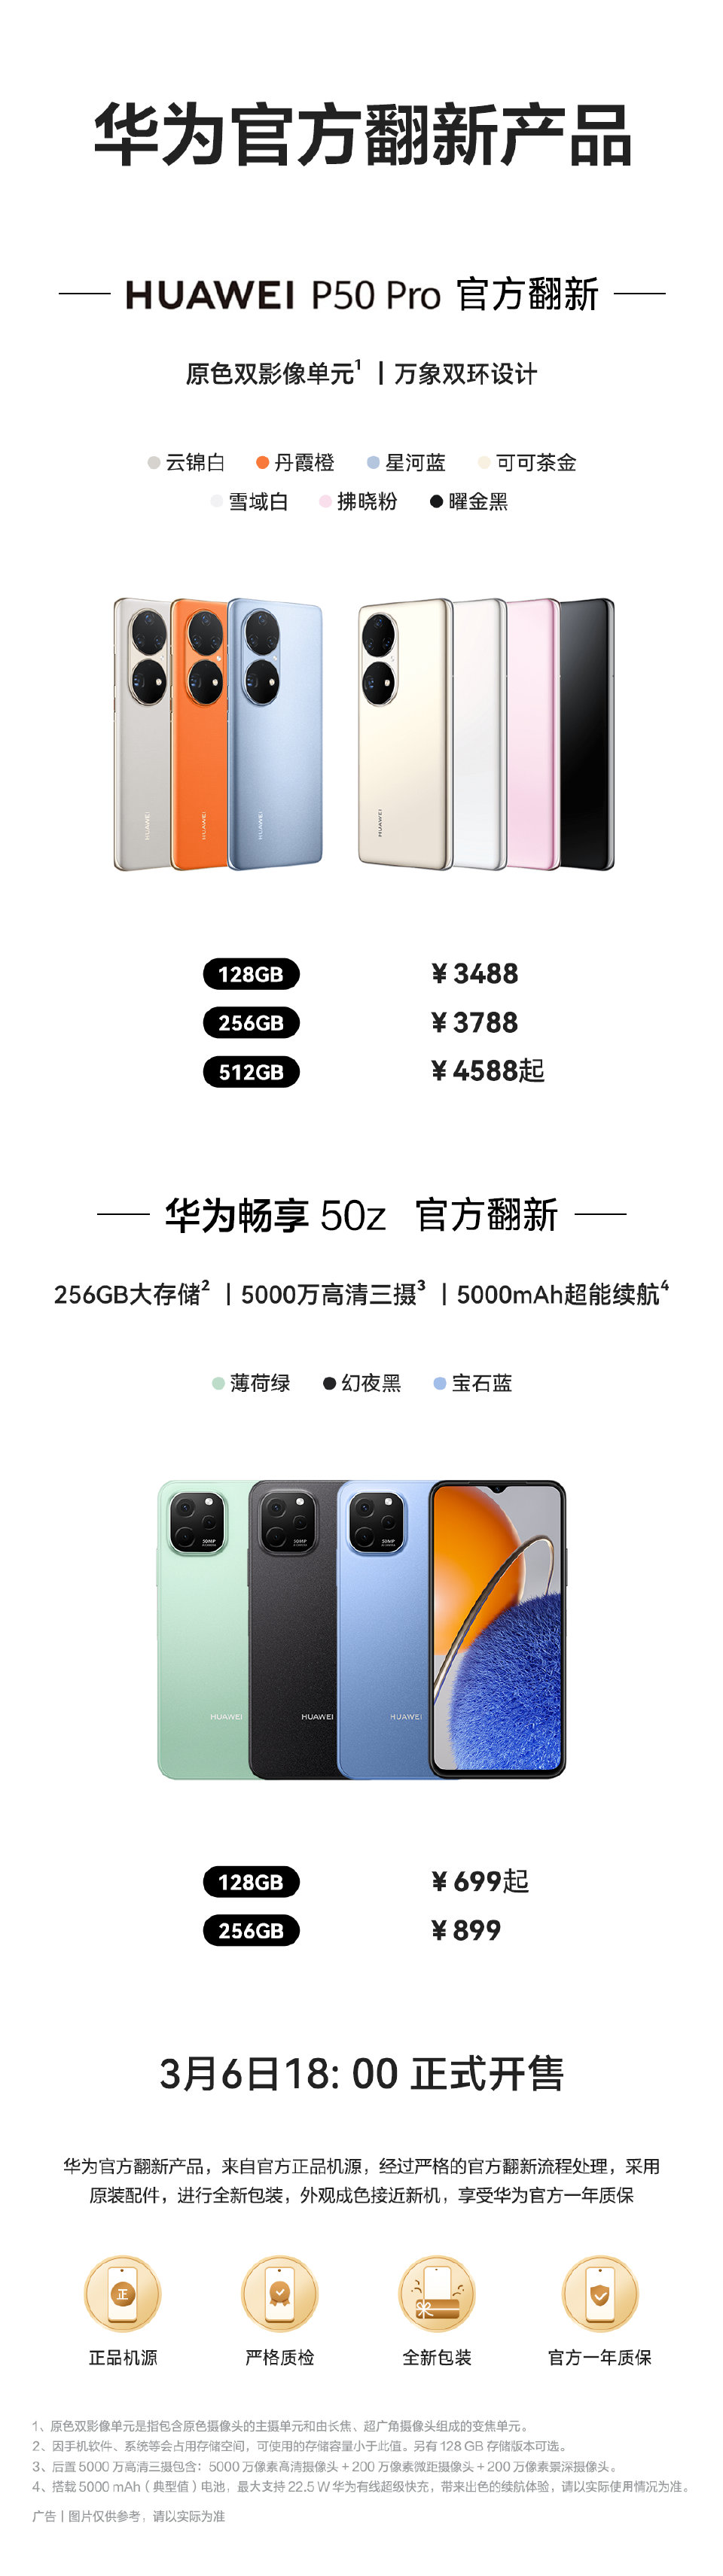 3488 元 / 699 元起，华为 P50 Pro、畅享 50z 官方翻新机开售